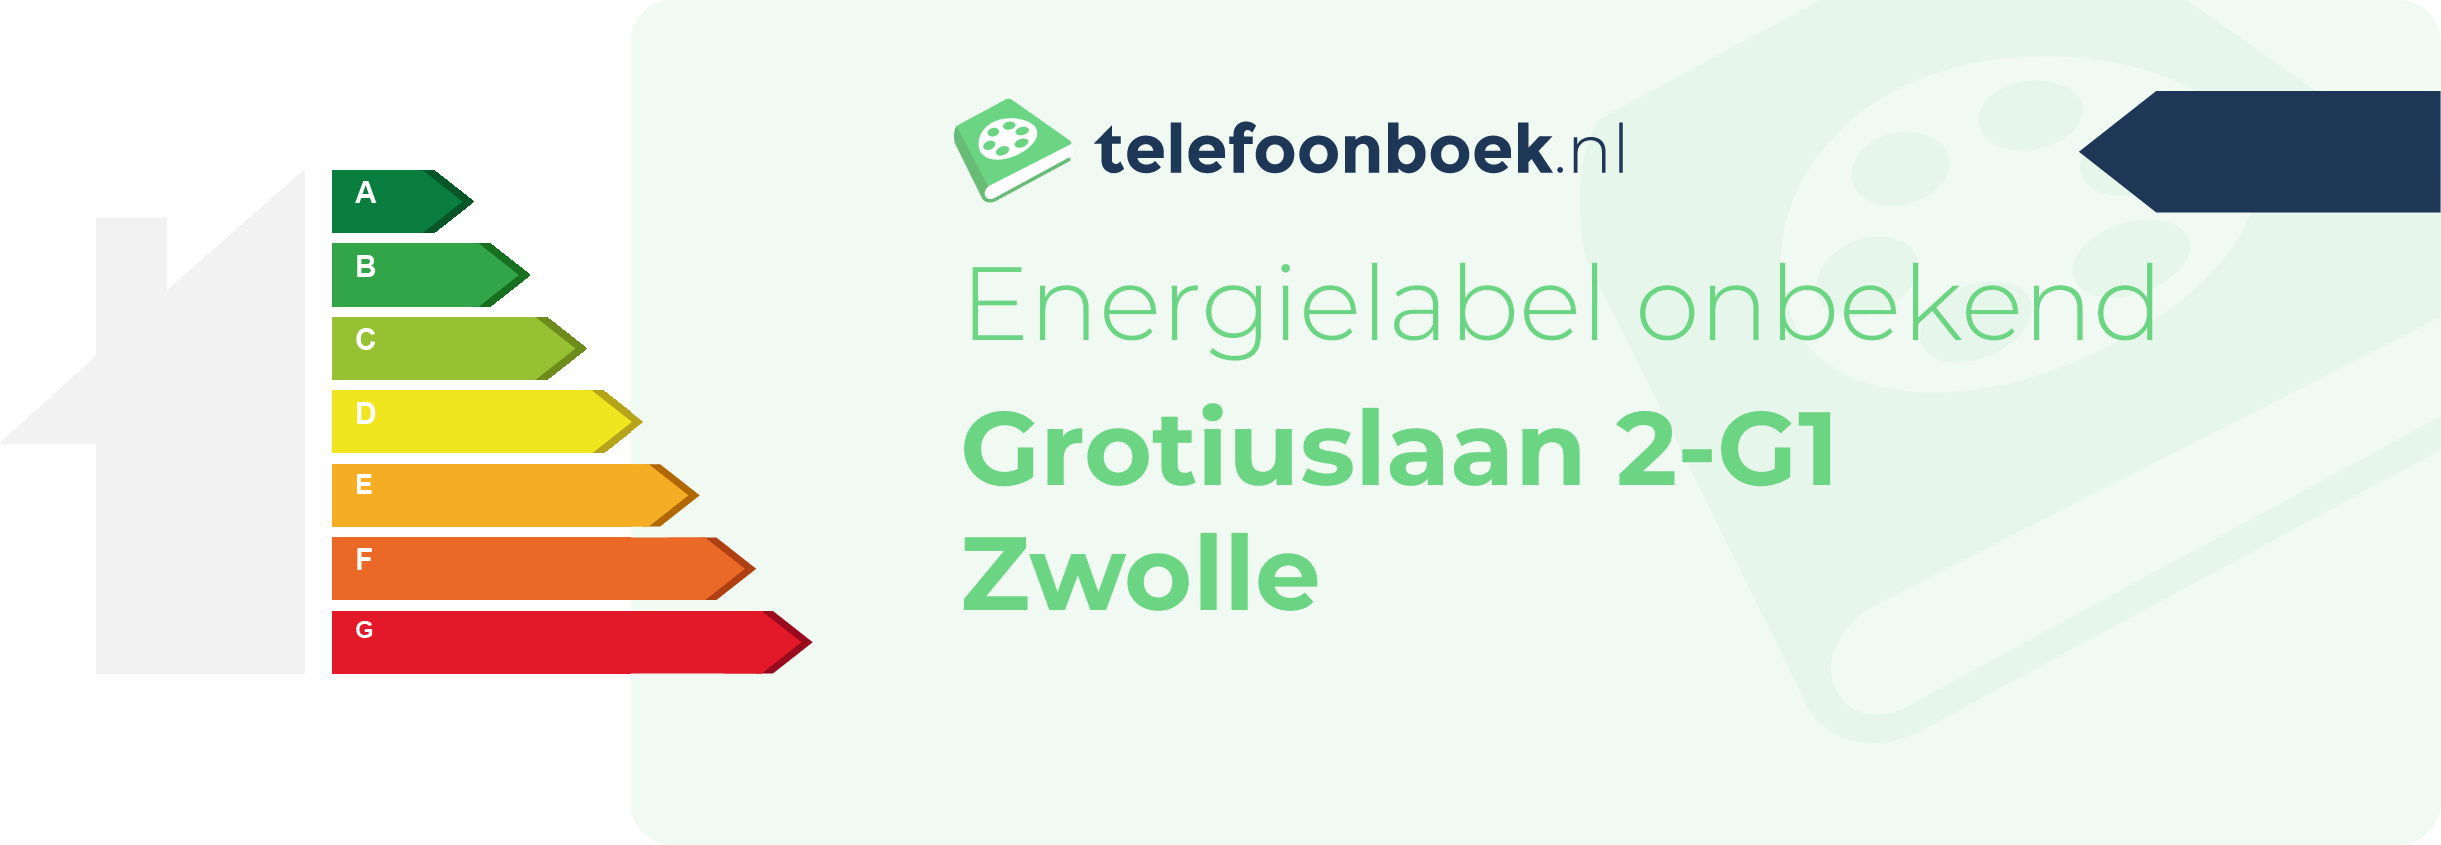 Energielabel Grotiuslaan 2-G1 Zwolle